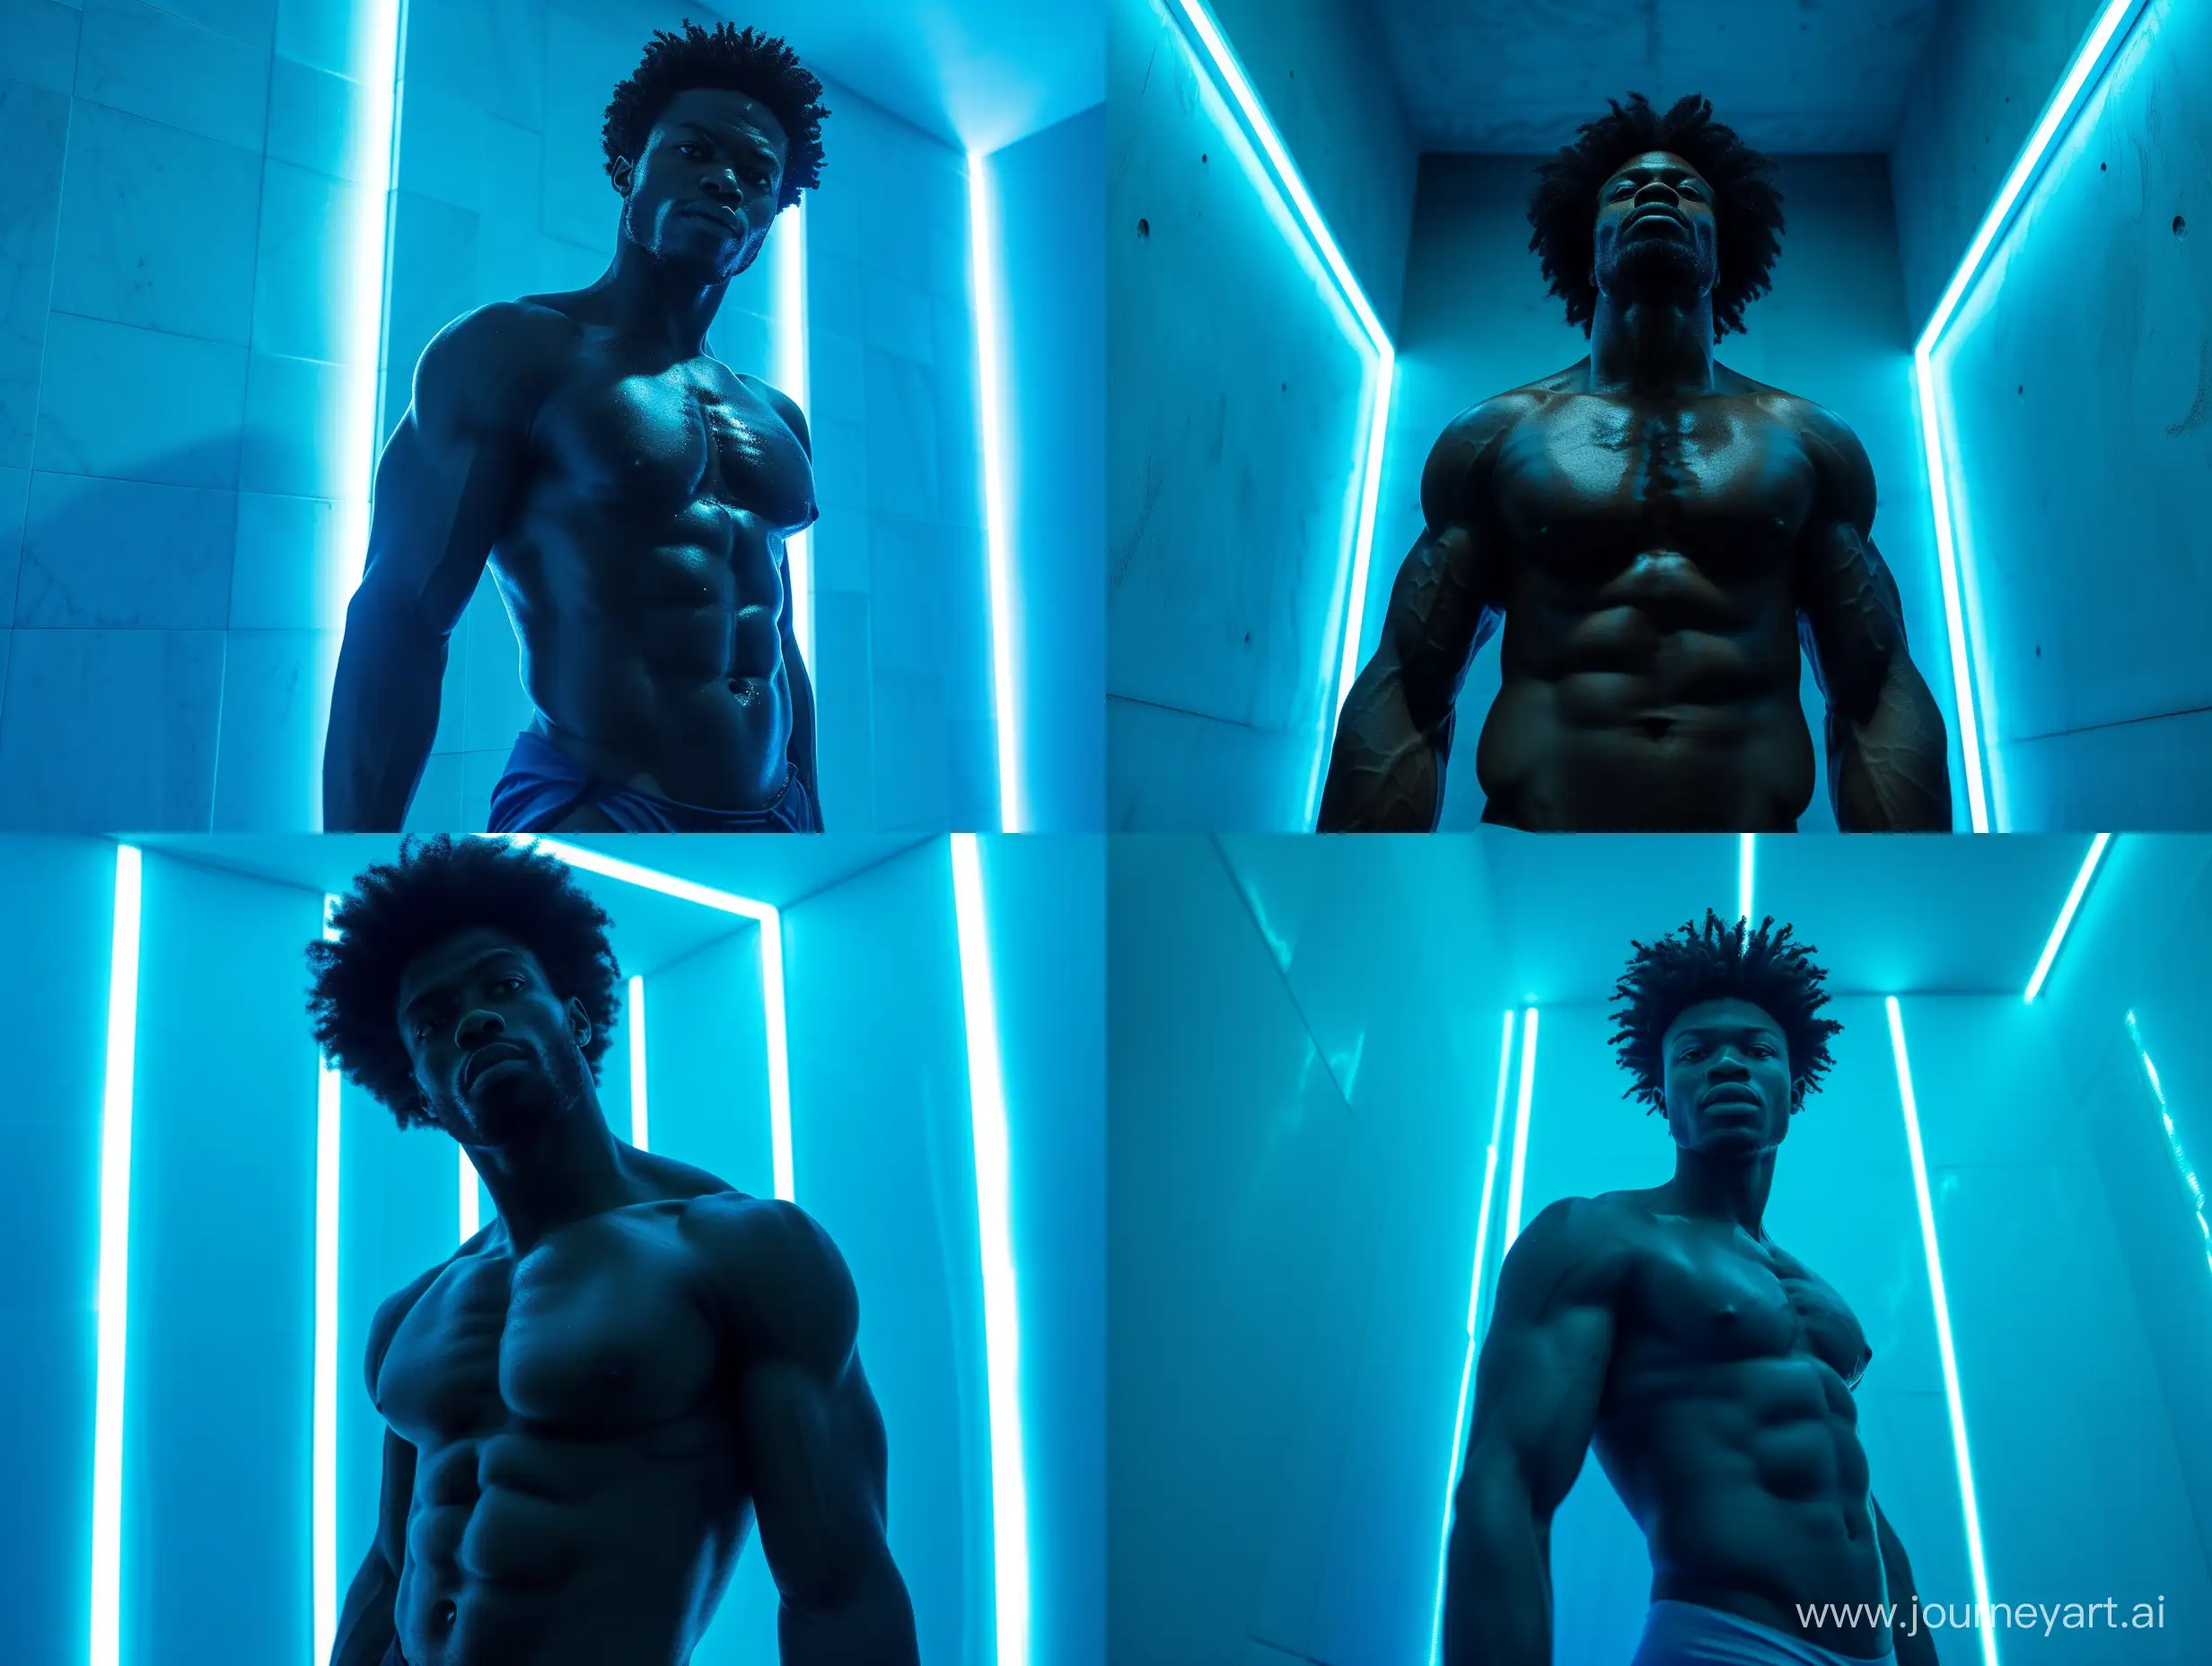 Confident-Black-Man-in-Futuristic-Blue-Room